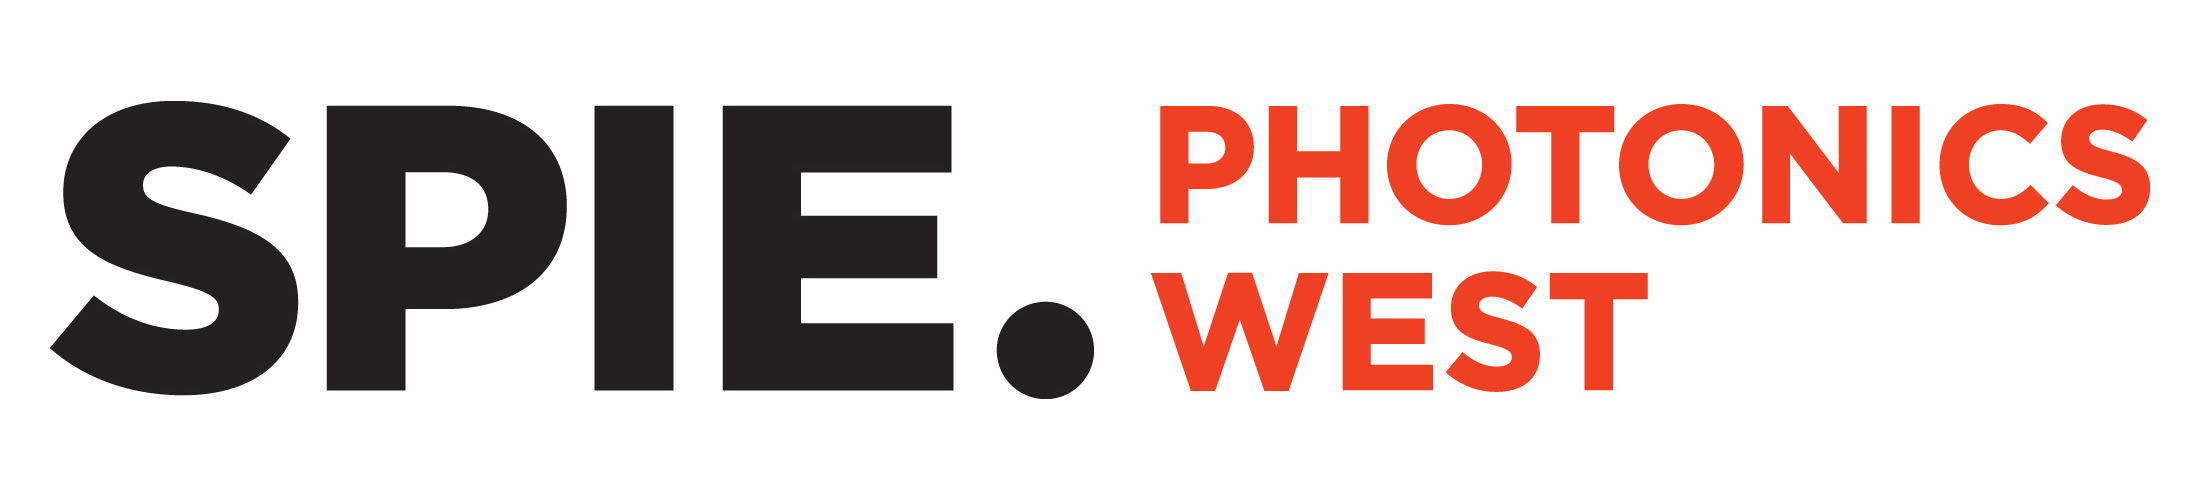 Logo: SPIE Photonics West